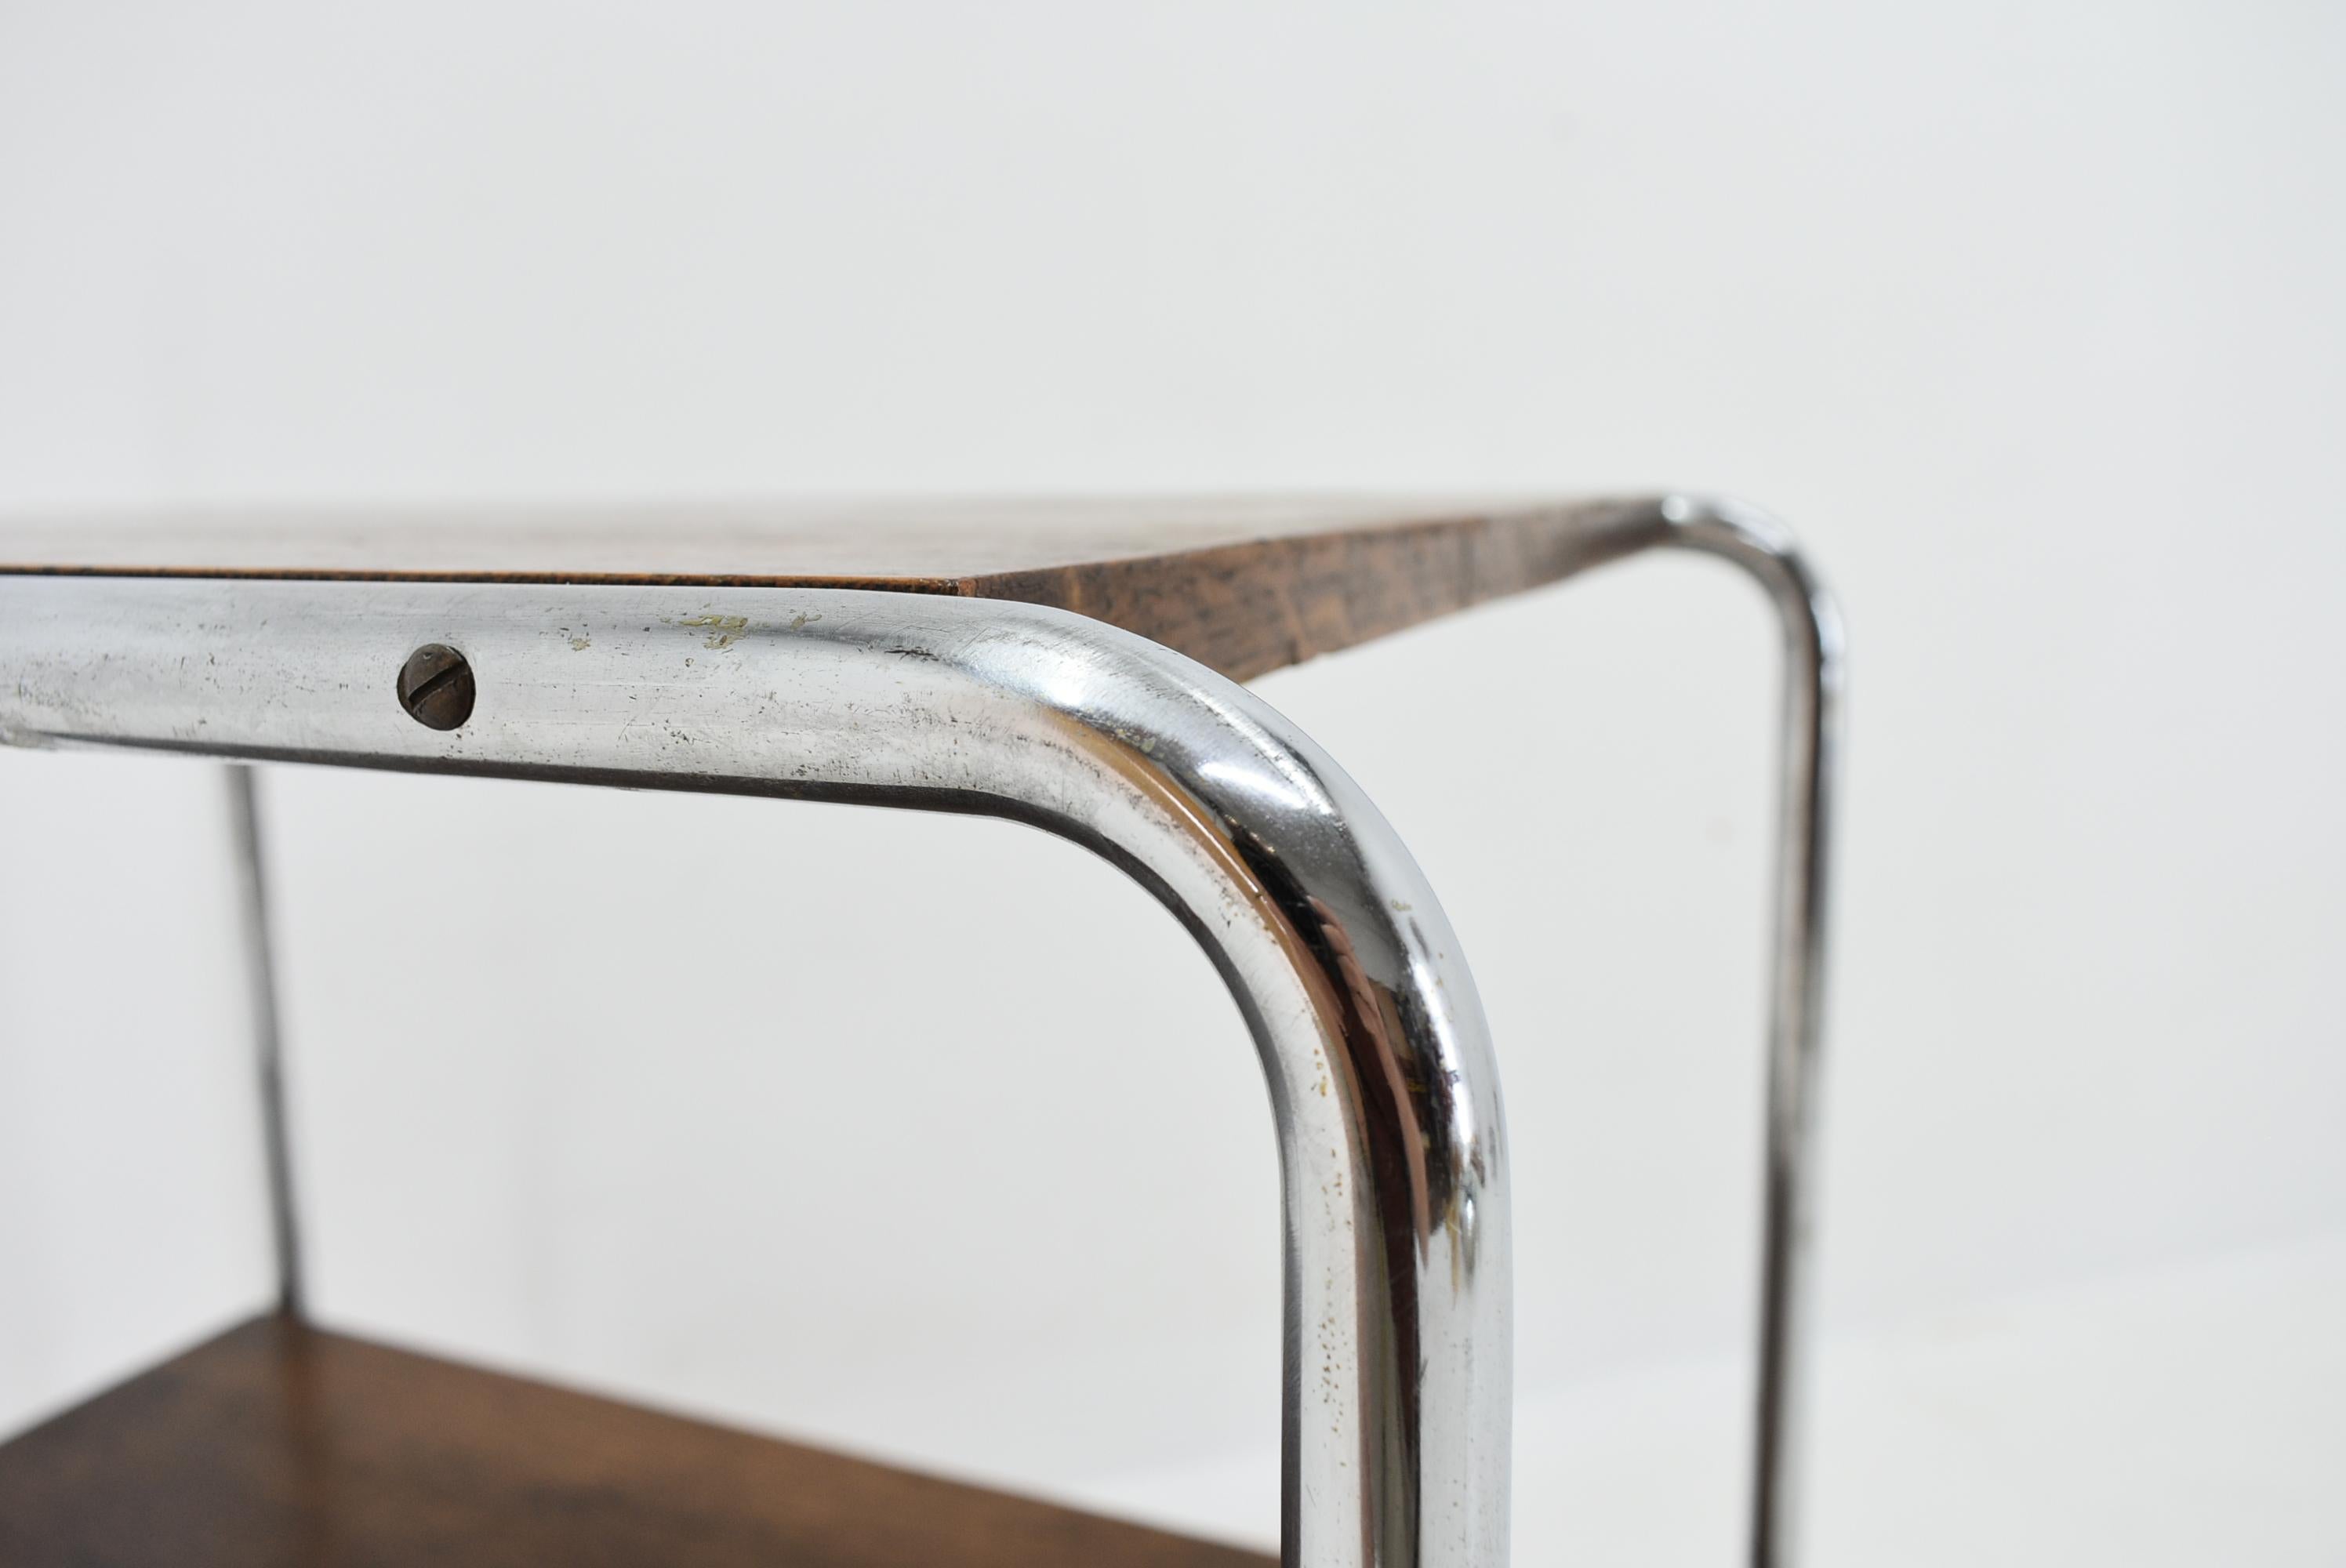 Bauhaus Chrome Table by Marcel Breuer for Mucke Melder, 1930s For Sale 6